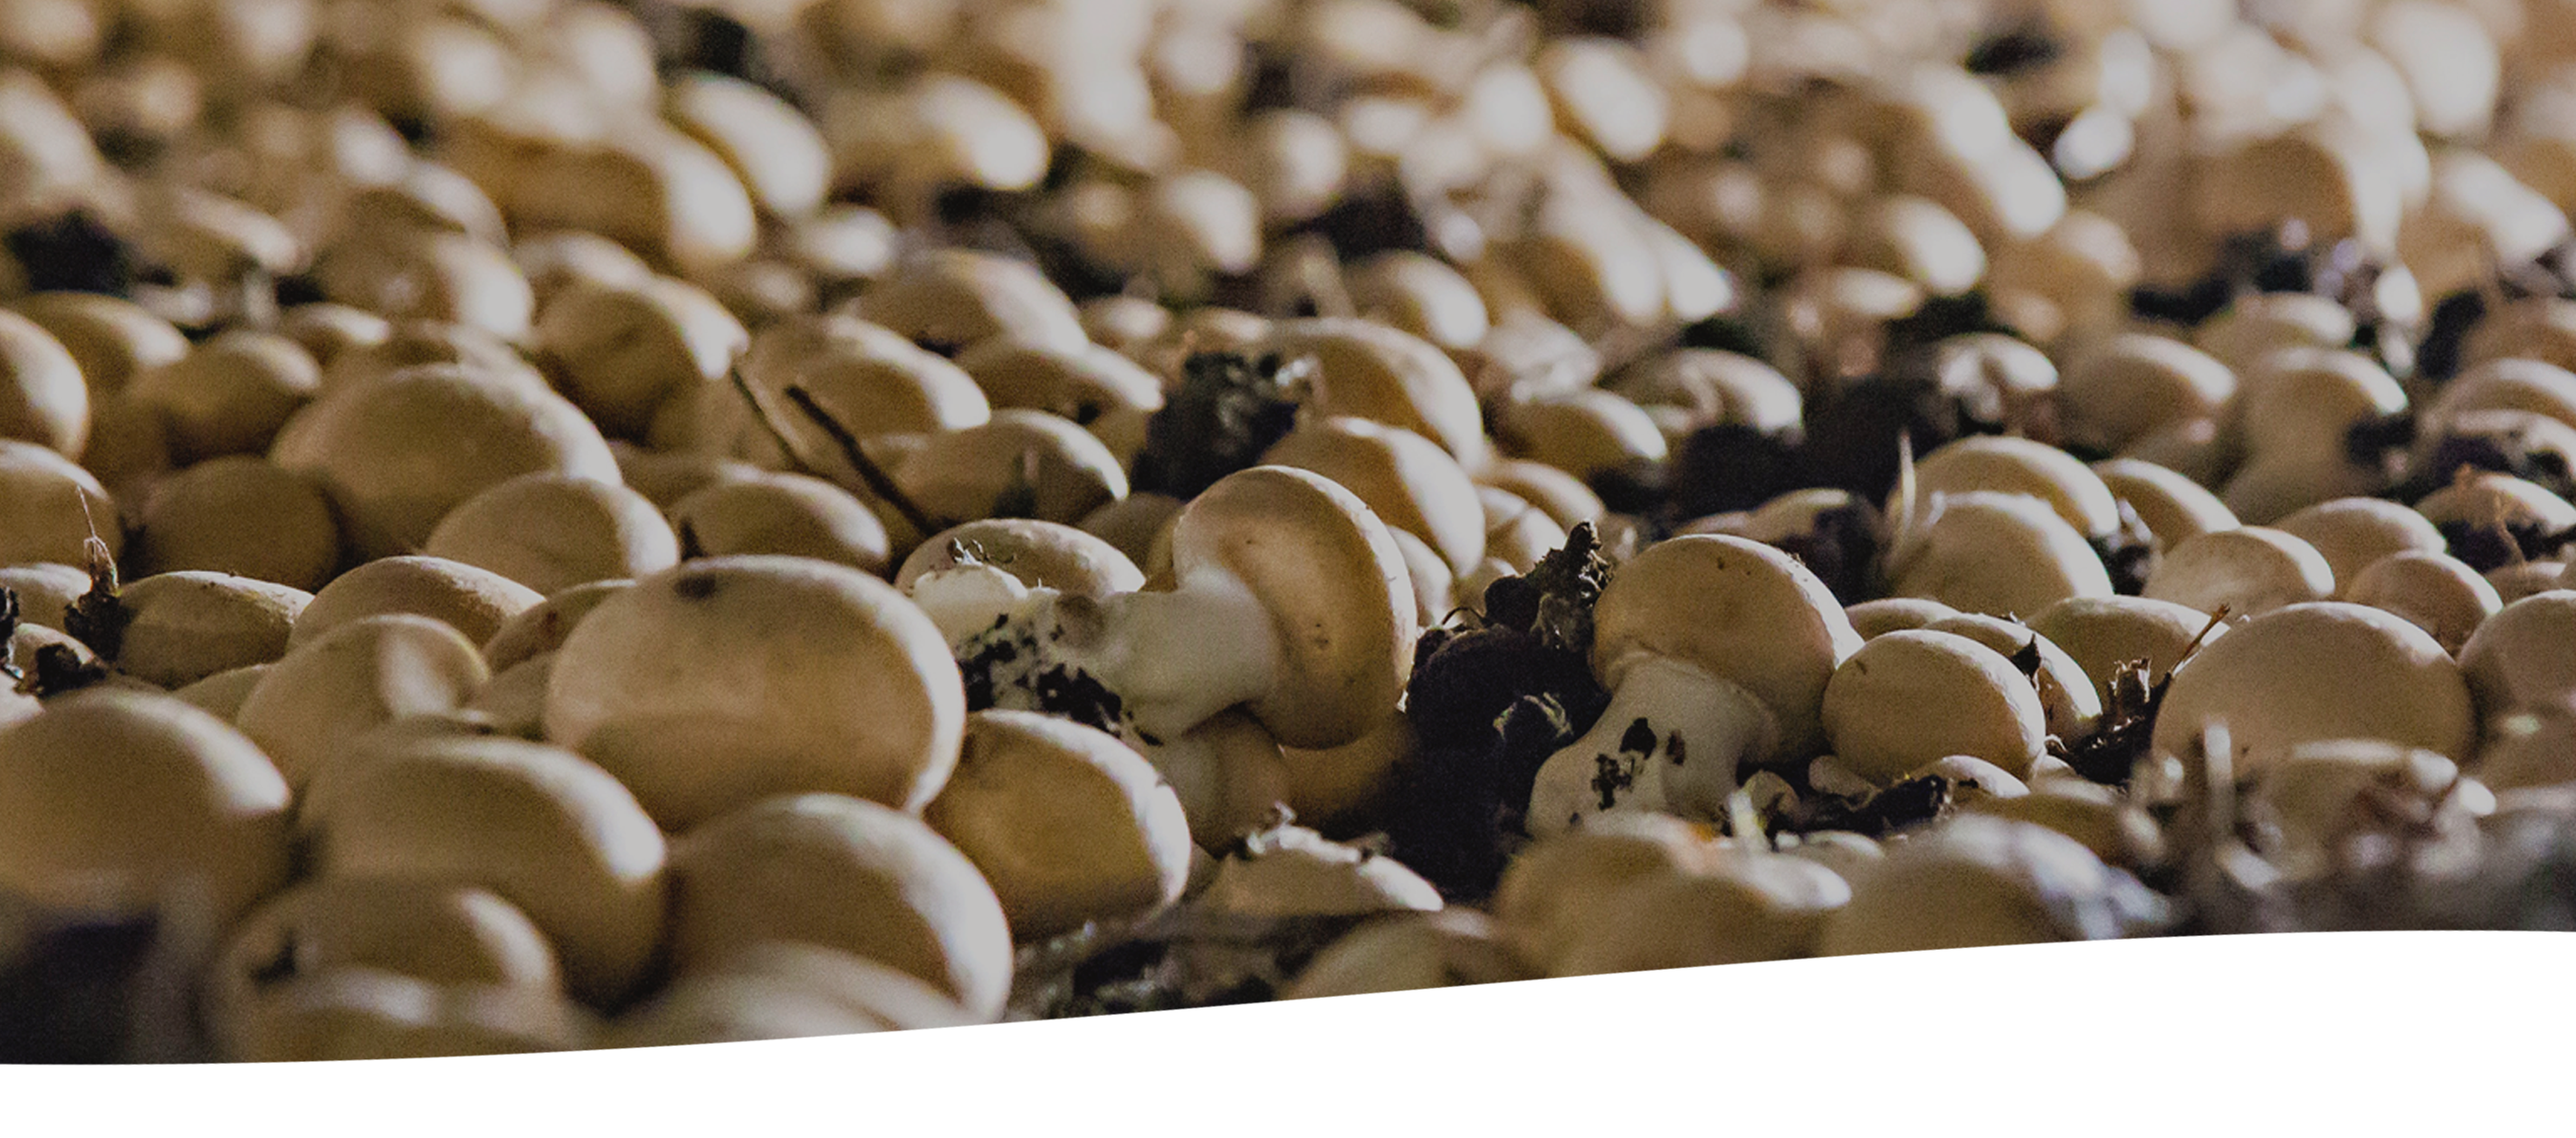 Mushrooms Growing